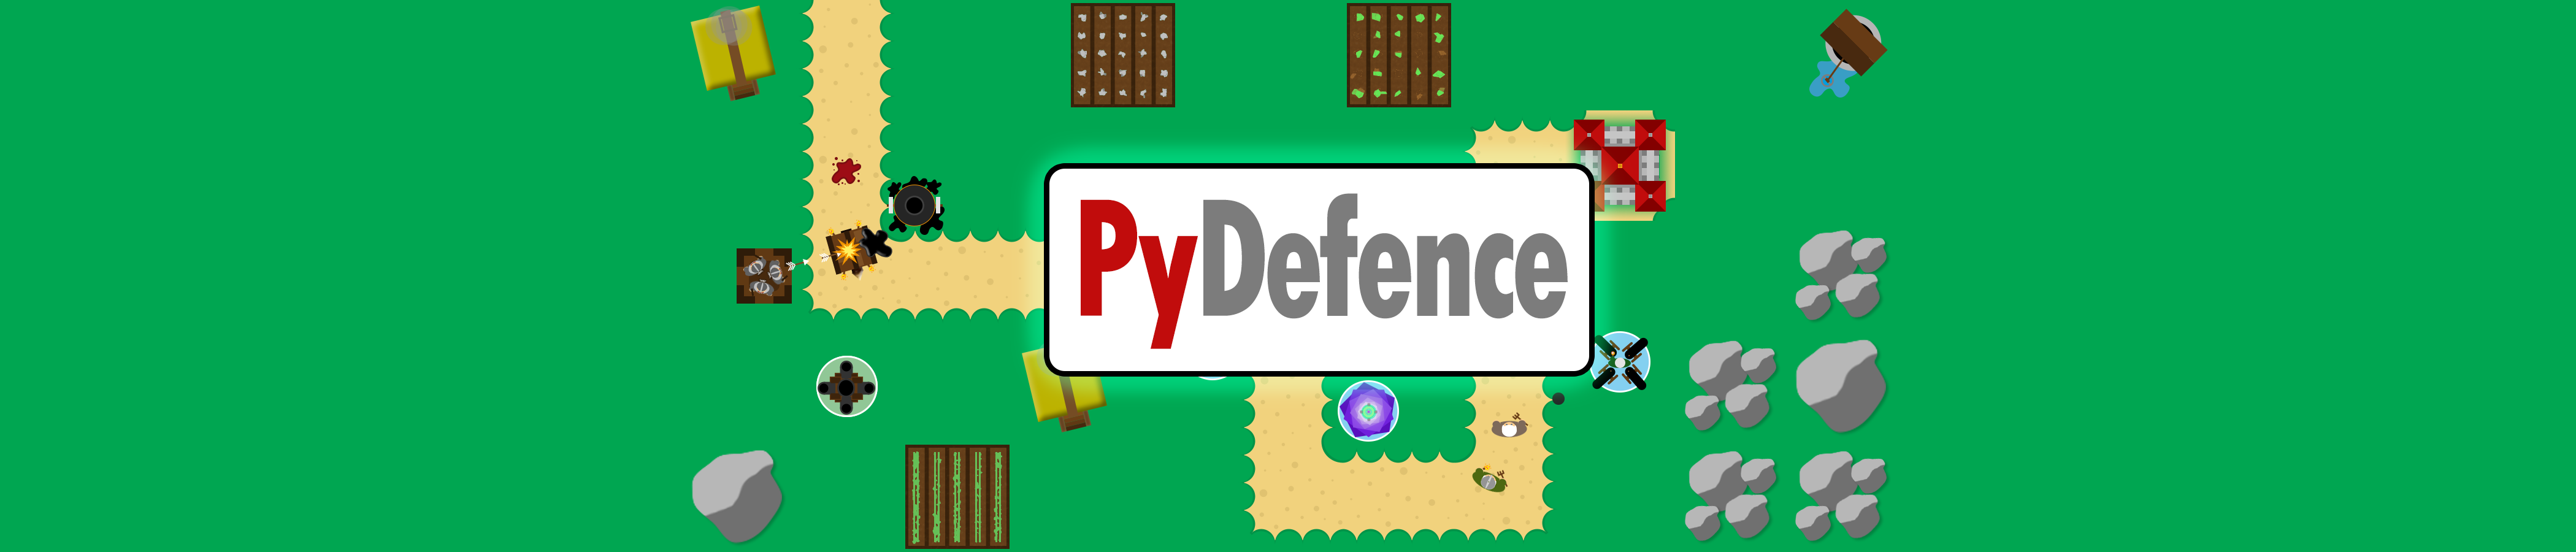 PyDefence